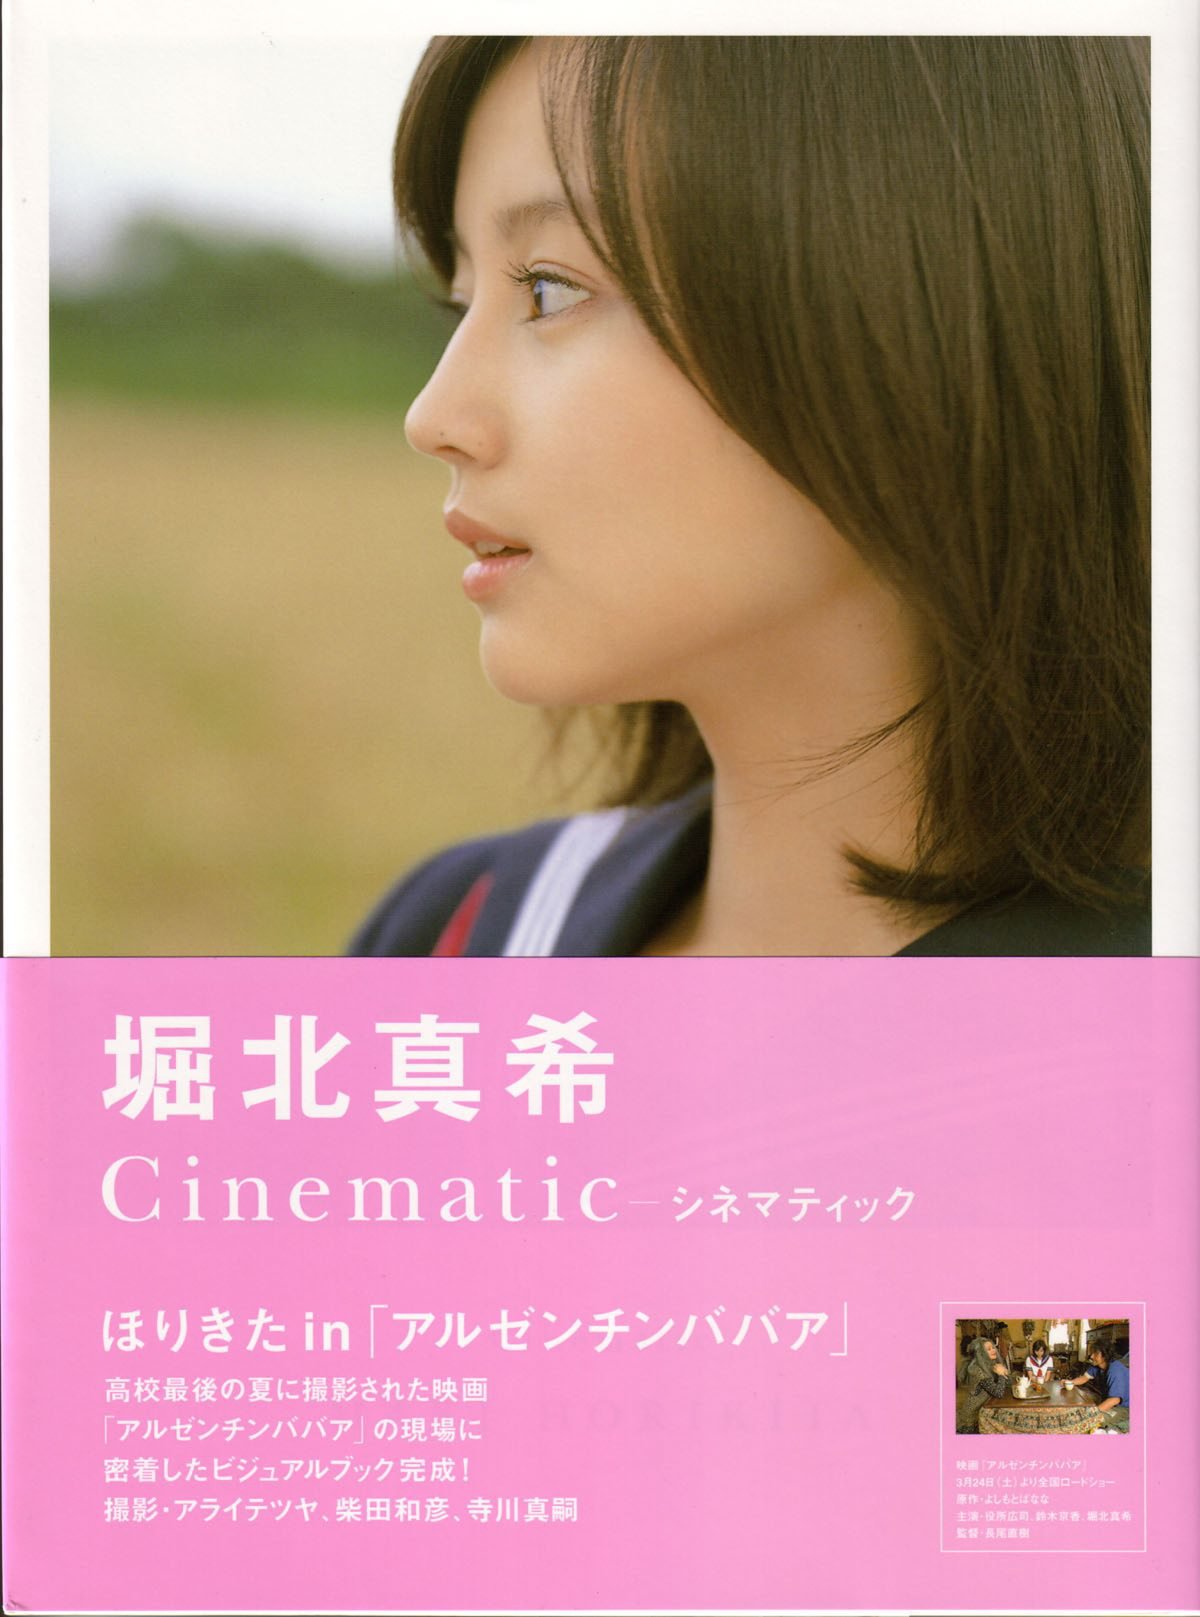 Photobook Maki Horikita 堀北真希 Cinematic 2007 03 07 0124 2931650862.jpg